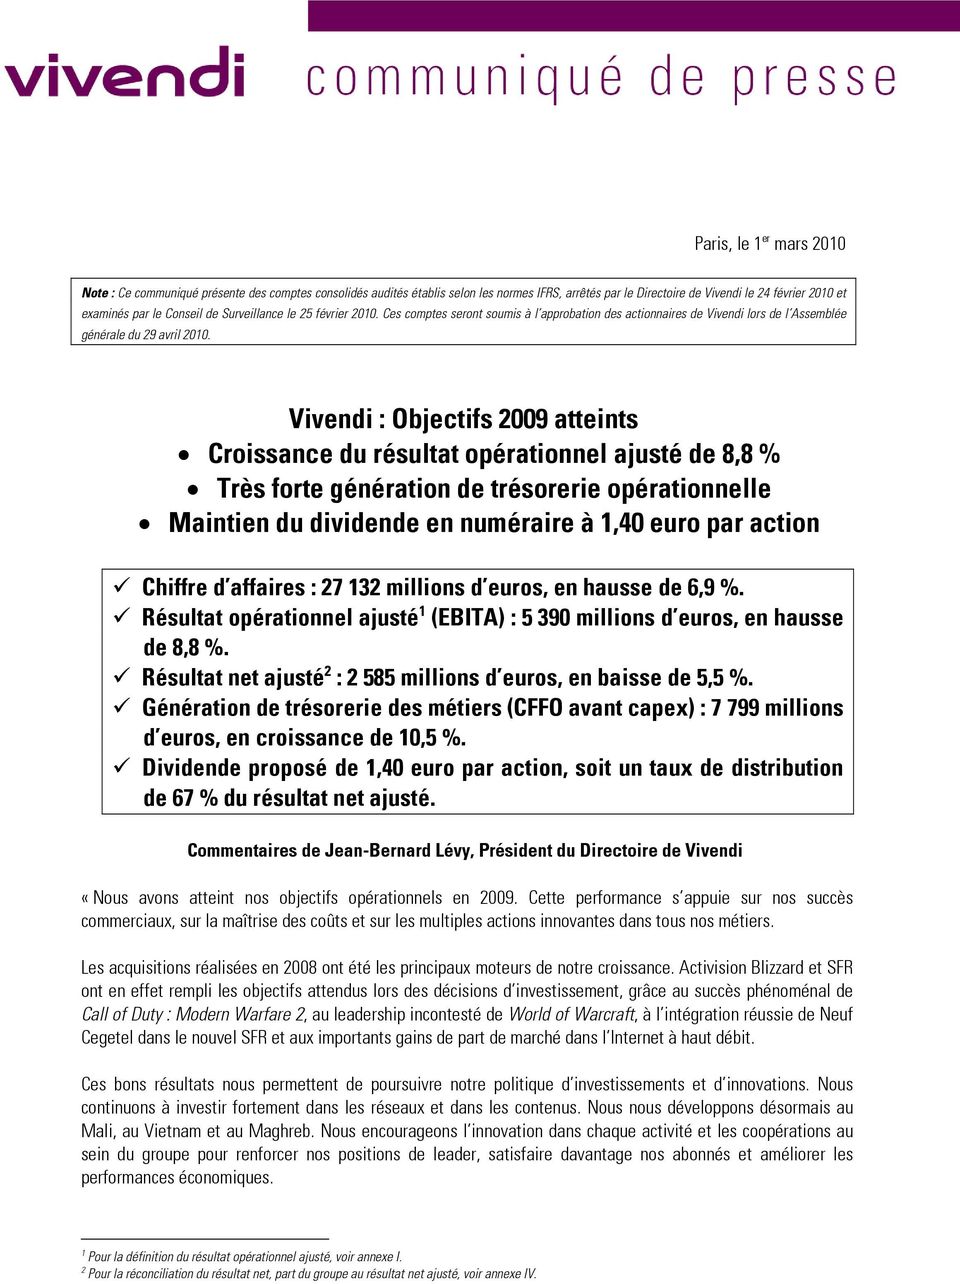 Vivendi : Objectifs 2009 atteints Croissance du résultat opérationnel ajusté de 8,8 % Très forte génération de trésorerie opérationnelle Maintien du dividende en numéraire à 1,40 euro par action